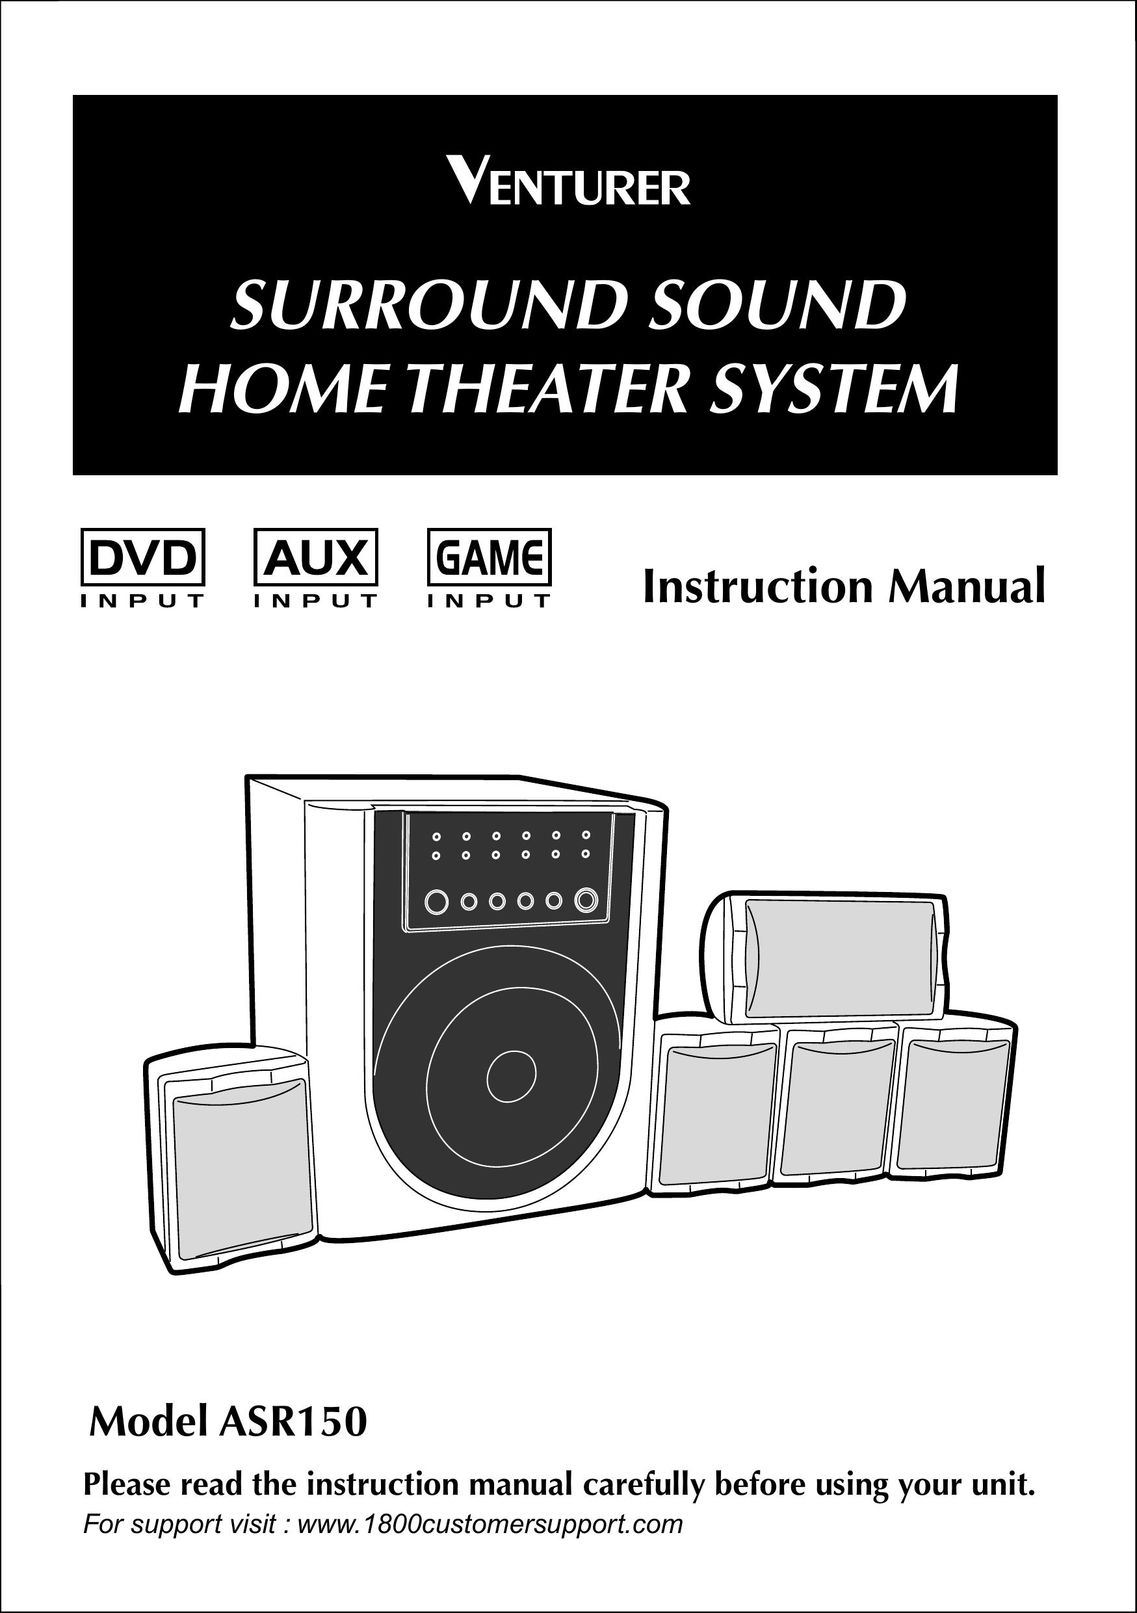 Venturer ASR150 Home Theater System User Manual